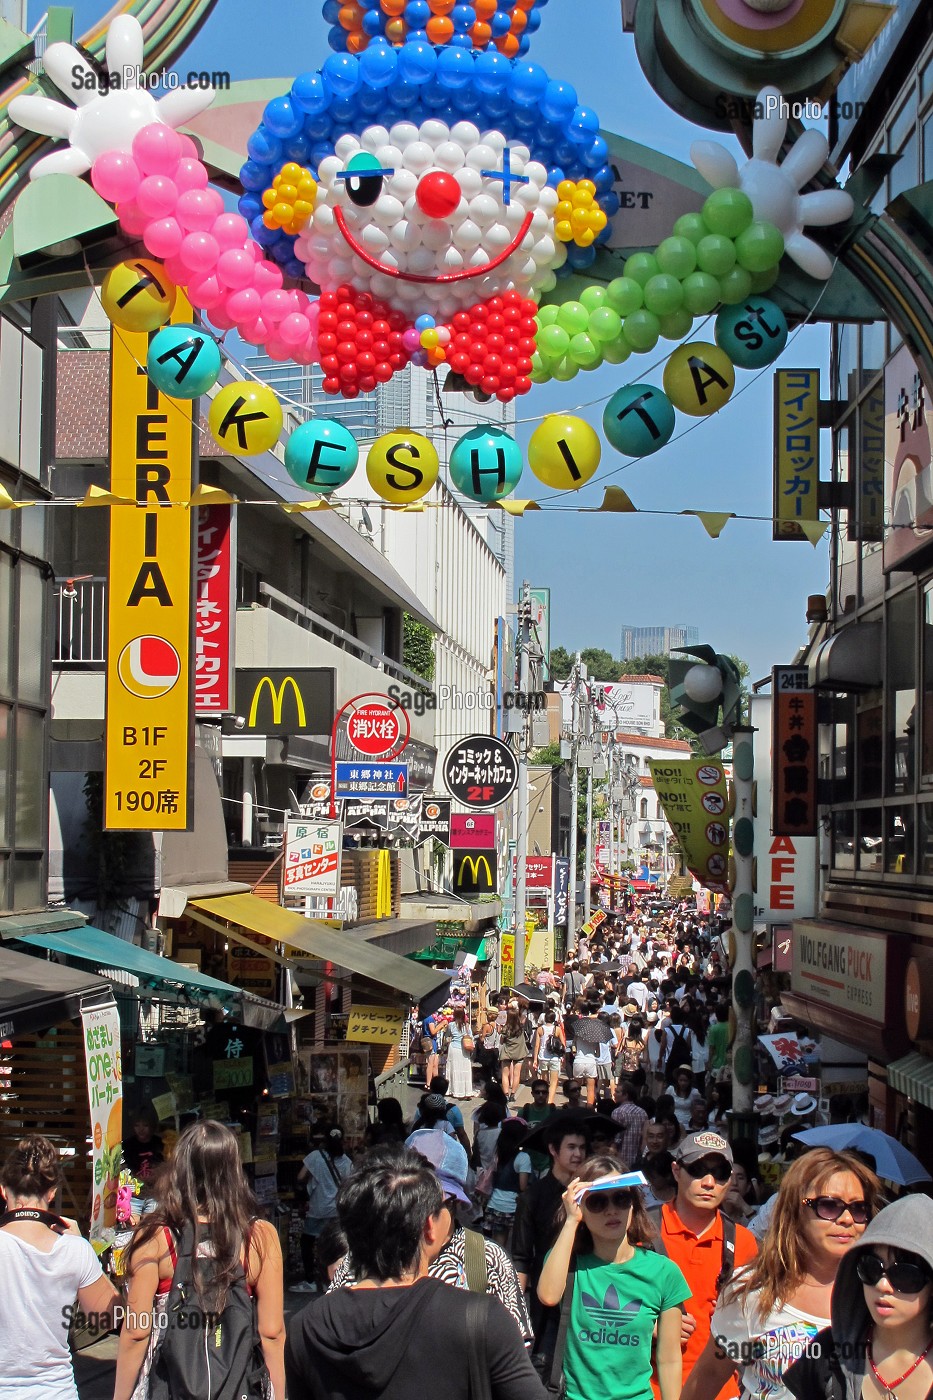 FOULE DANS TAKESHITA STREET, RUE COMMERCANTE ET POPULAIRE, QUARTIER DE HARAJUKU, TOKYO, JAPON 